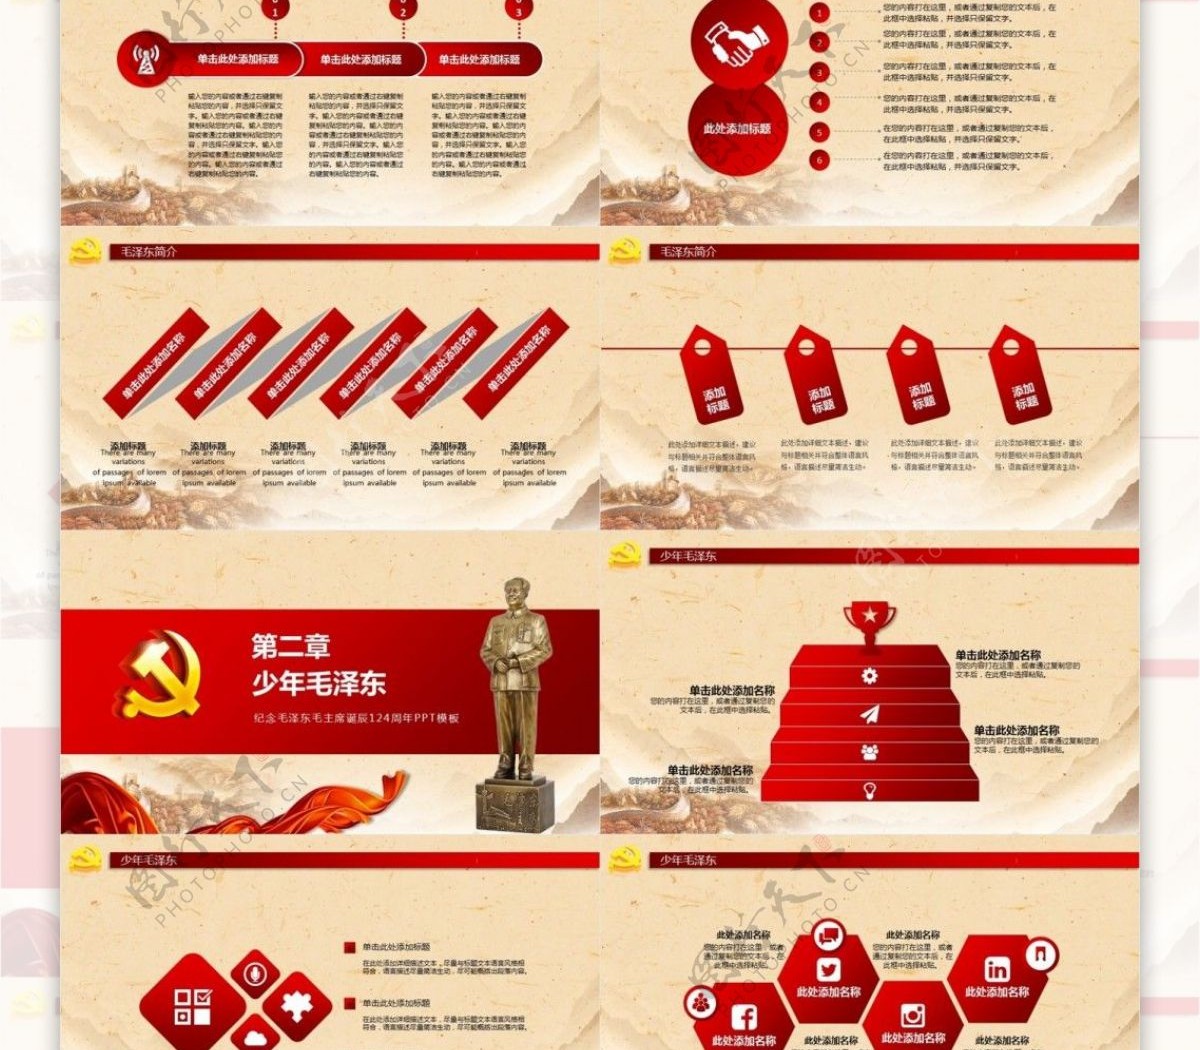 纪念毛泽东毛主席诞辰124周年PPT模板